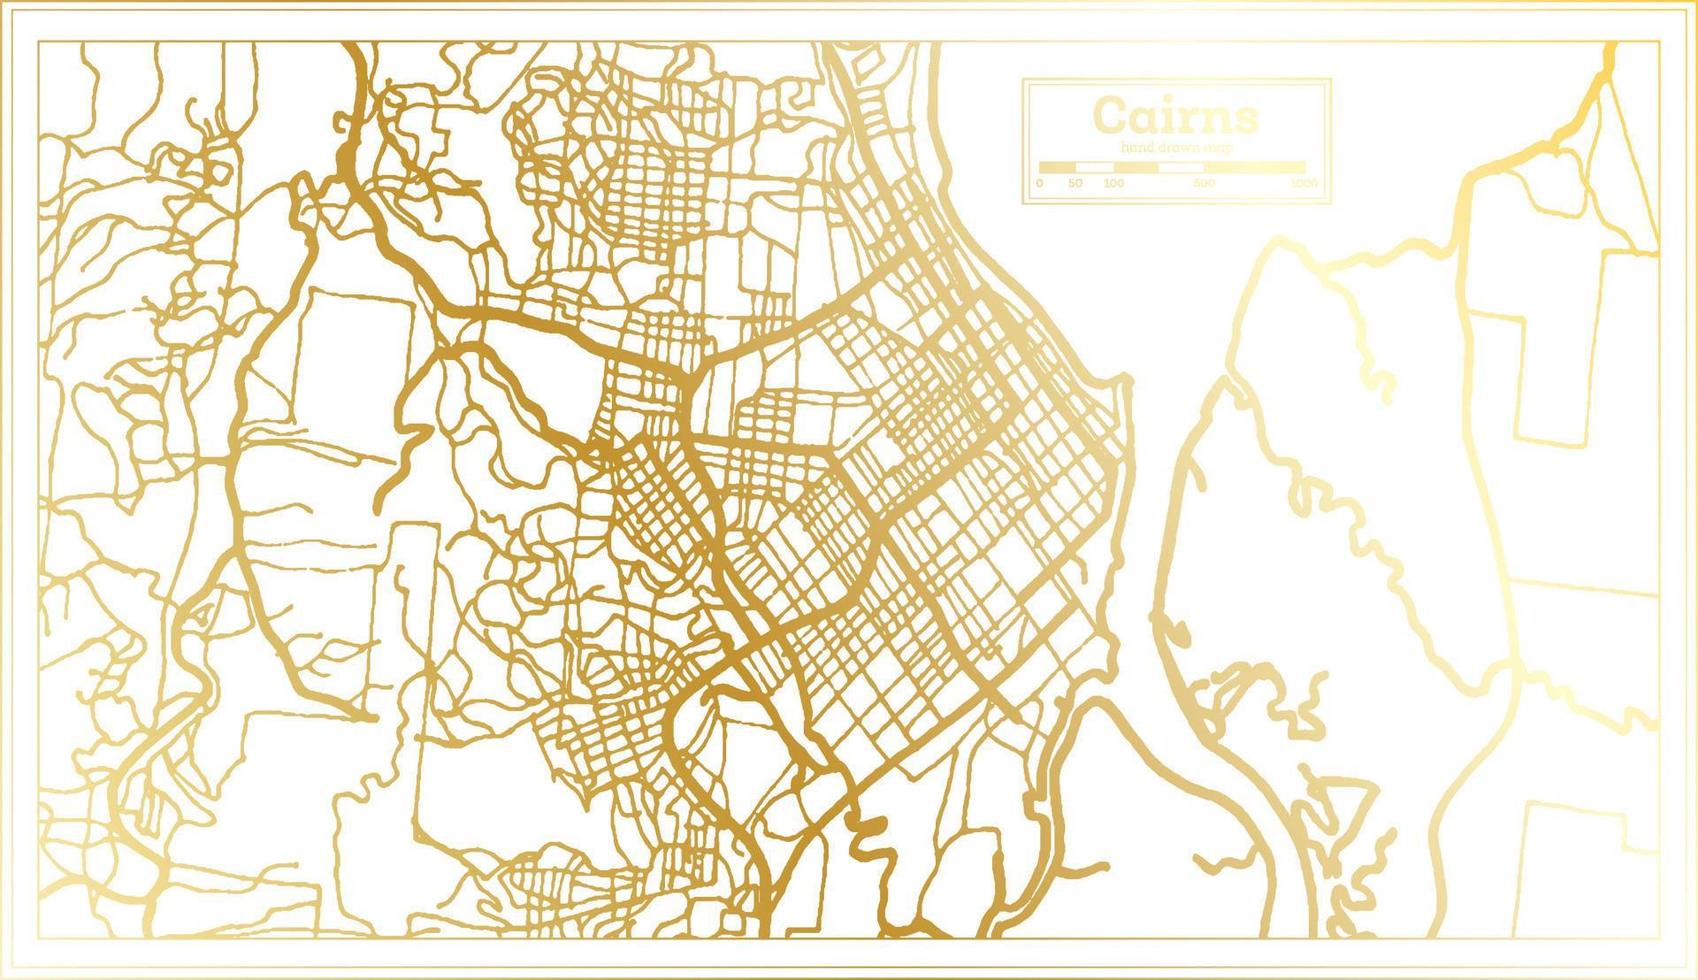 plan de la ville de cairns australie dans un style rétro de couleur dorée. carte muette. vecteur